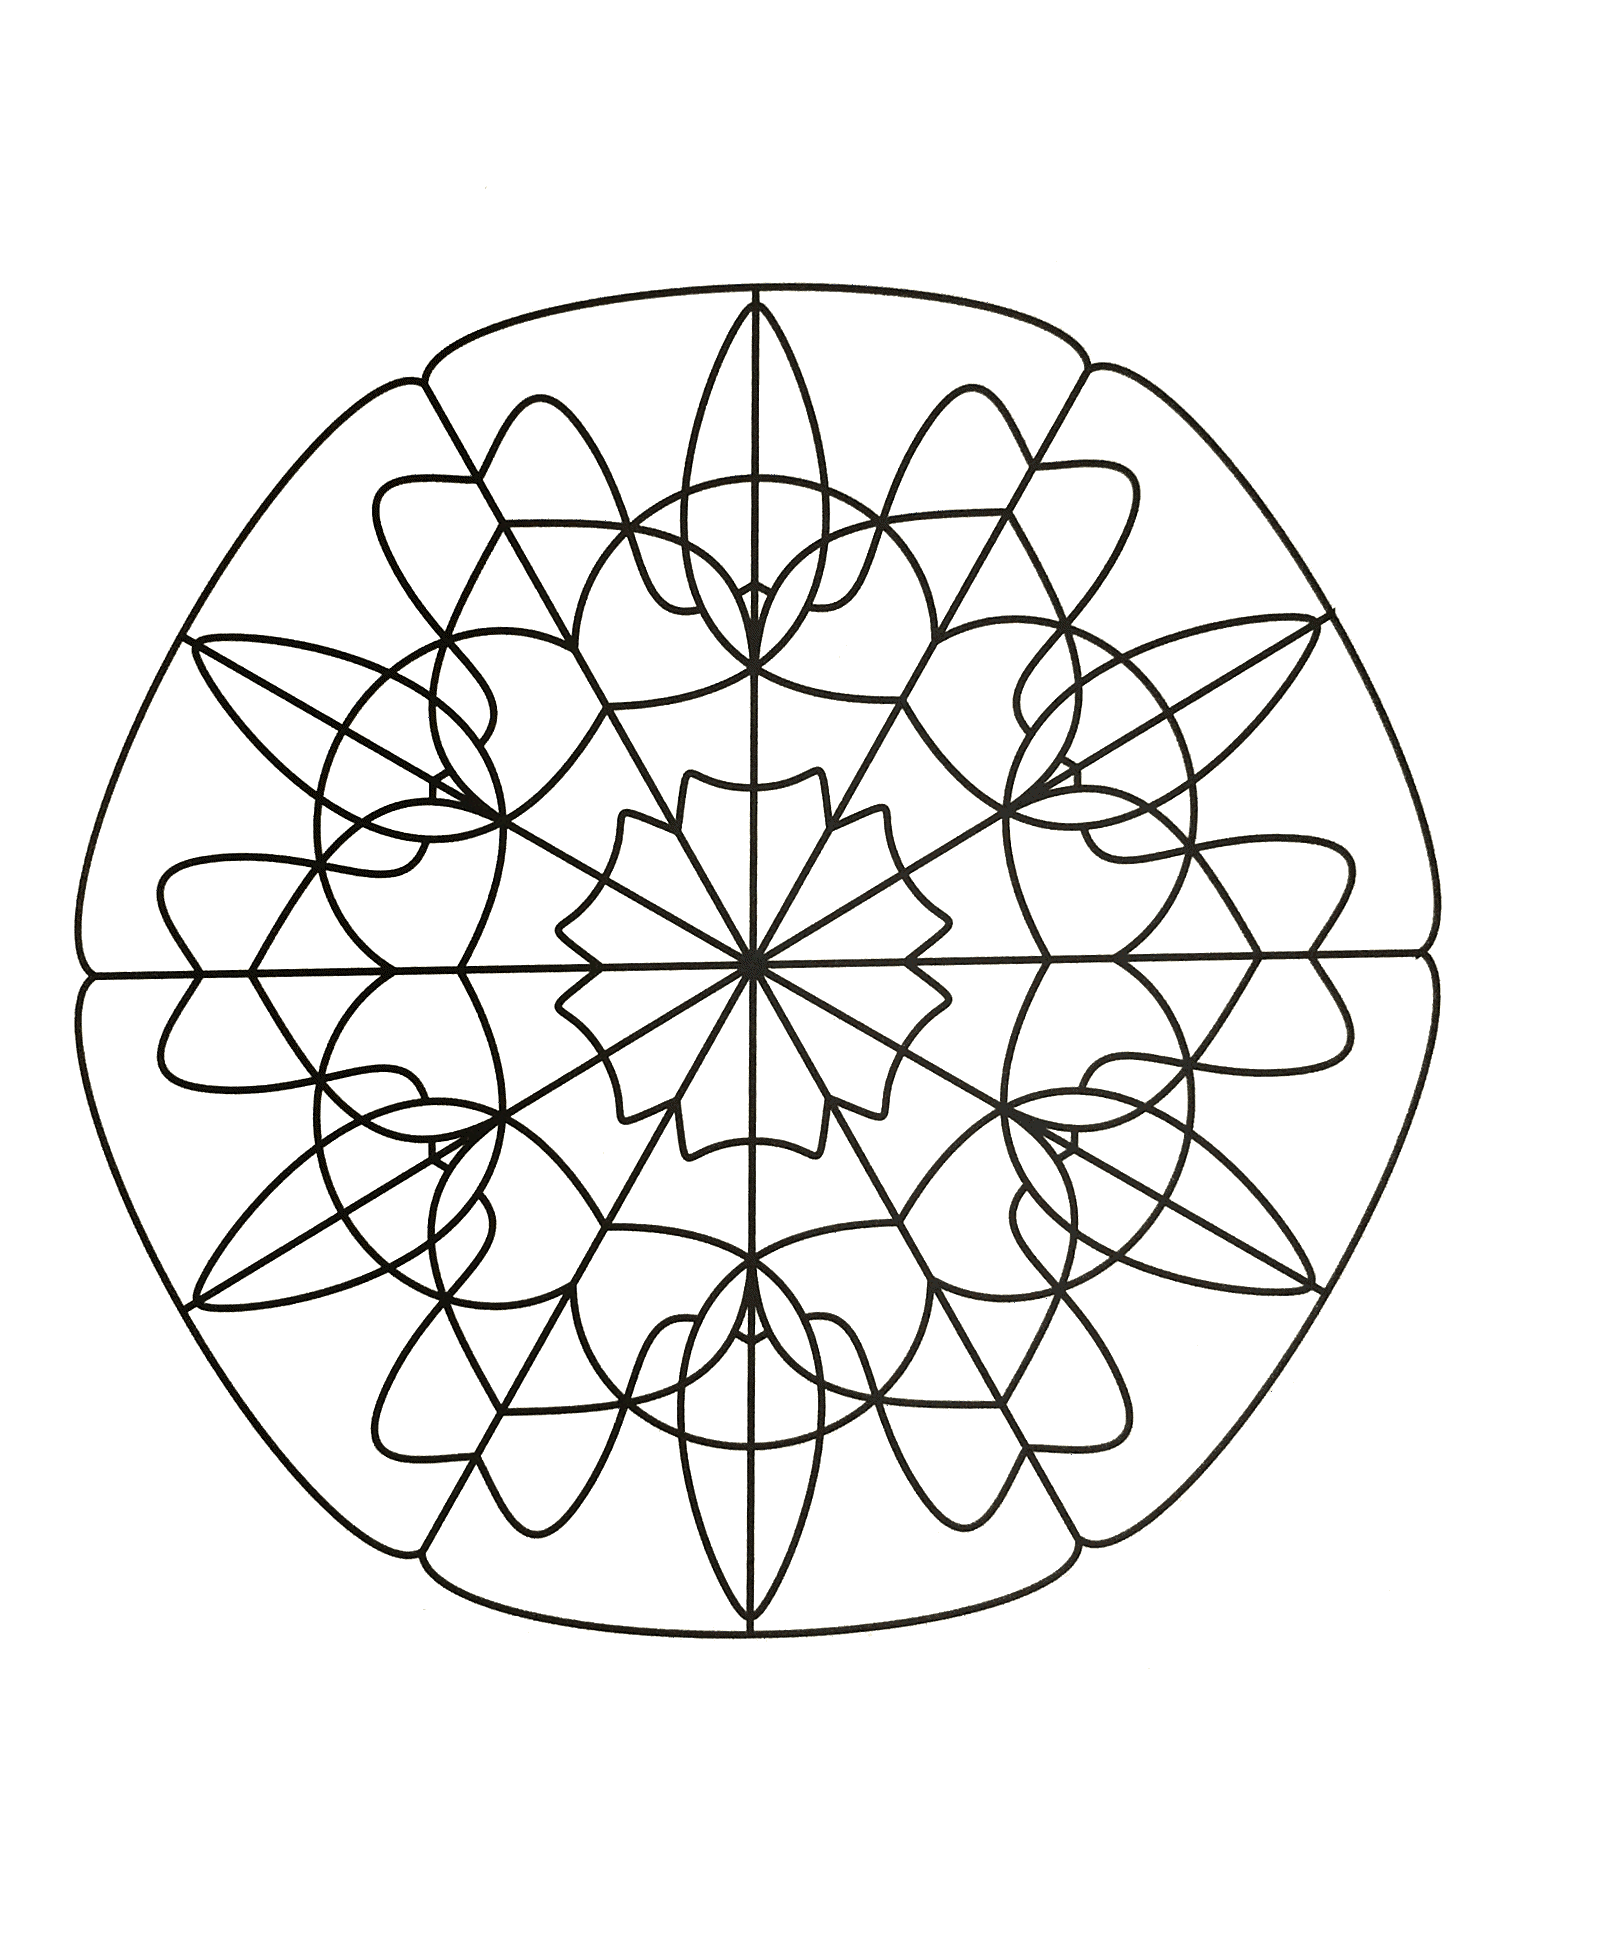 Détendez vous avec ce très beau Mandala comportant des formes très régulières et symétriques, dessinées avec grand talent.